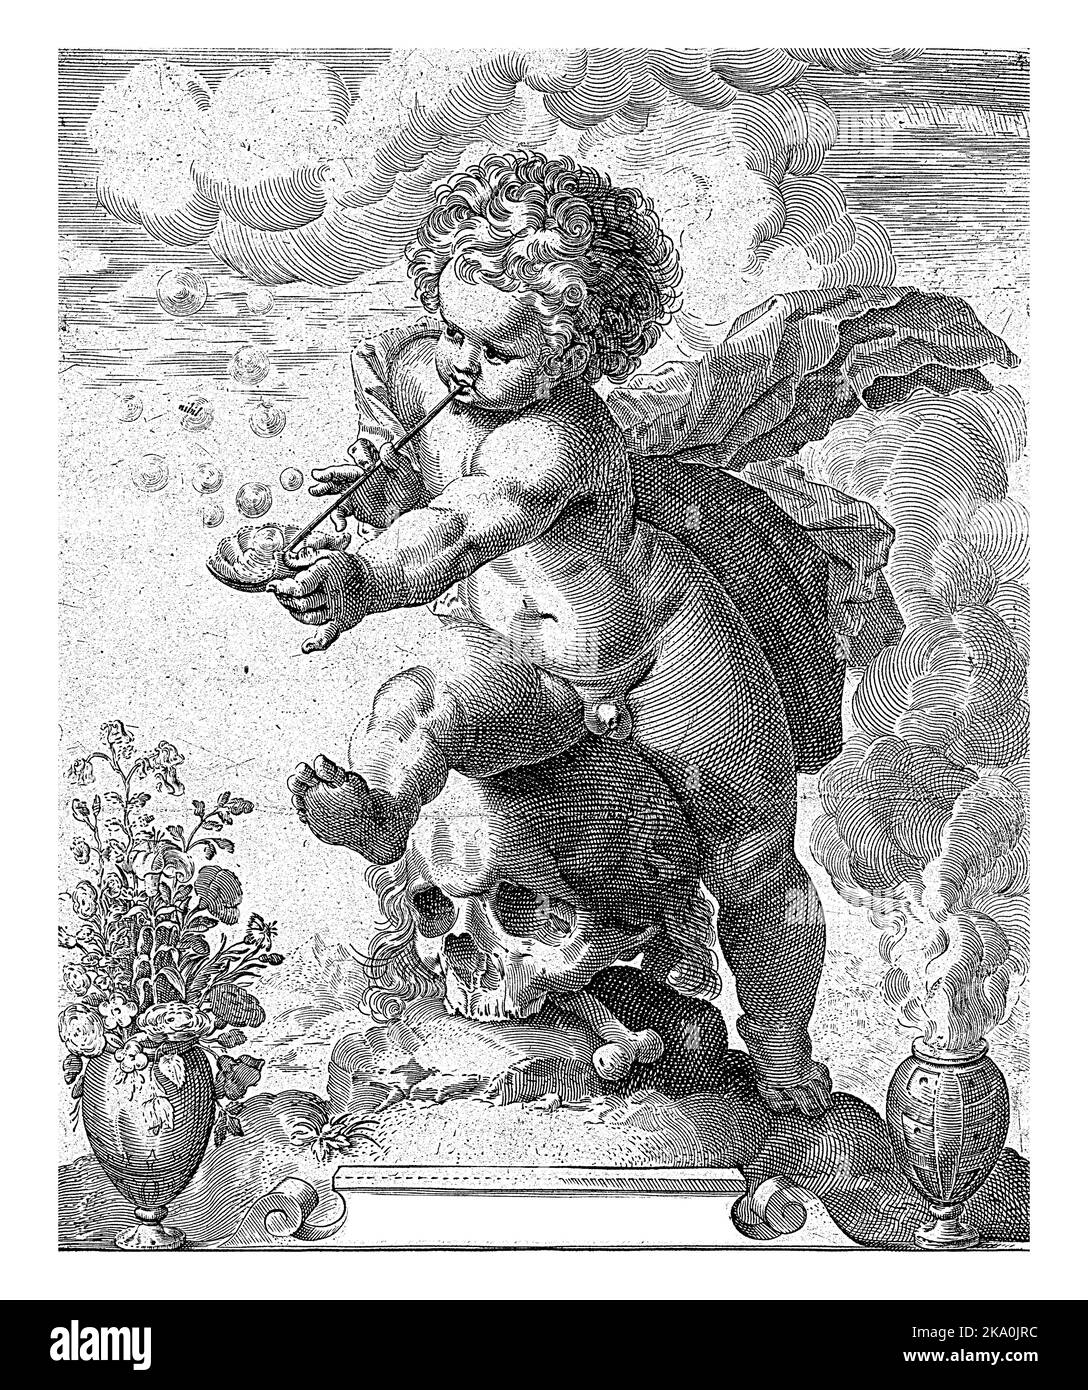 Ein Putto sitzt auf einem Schädel und bläst Blasen. Links eine Vase mit Blumen und rechts ein rauchenden Fass. Stockfoto